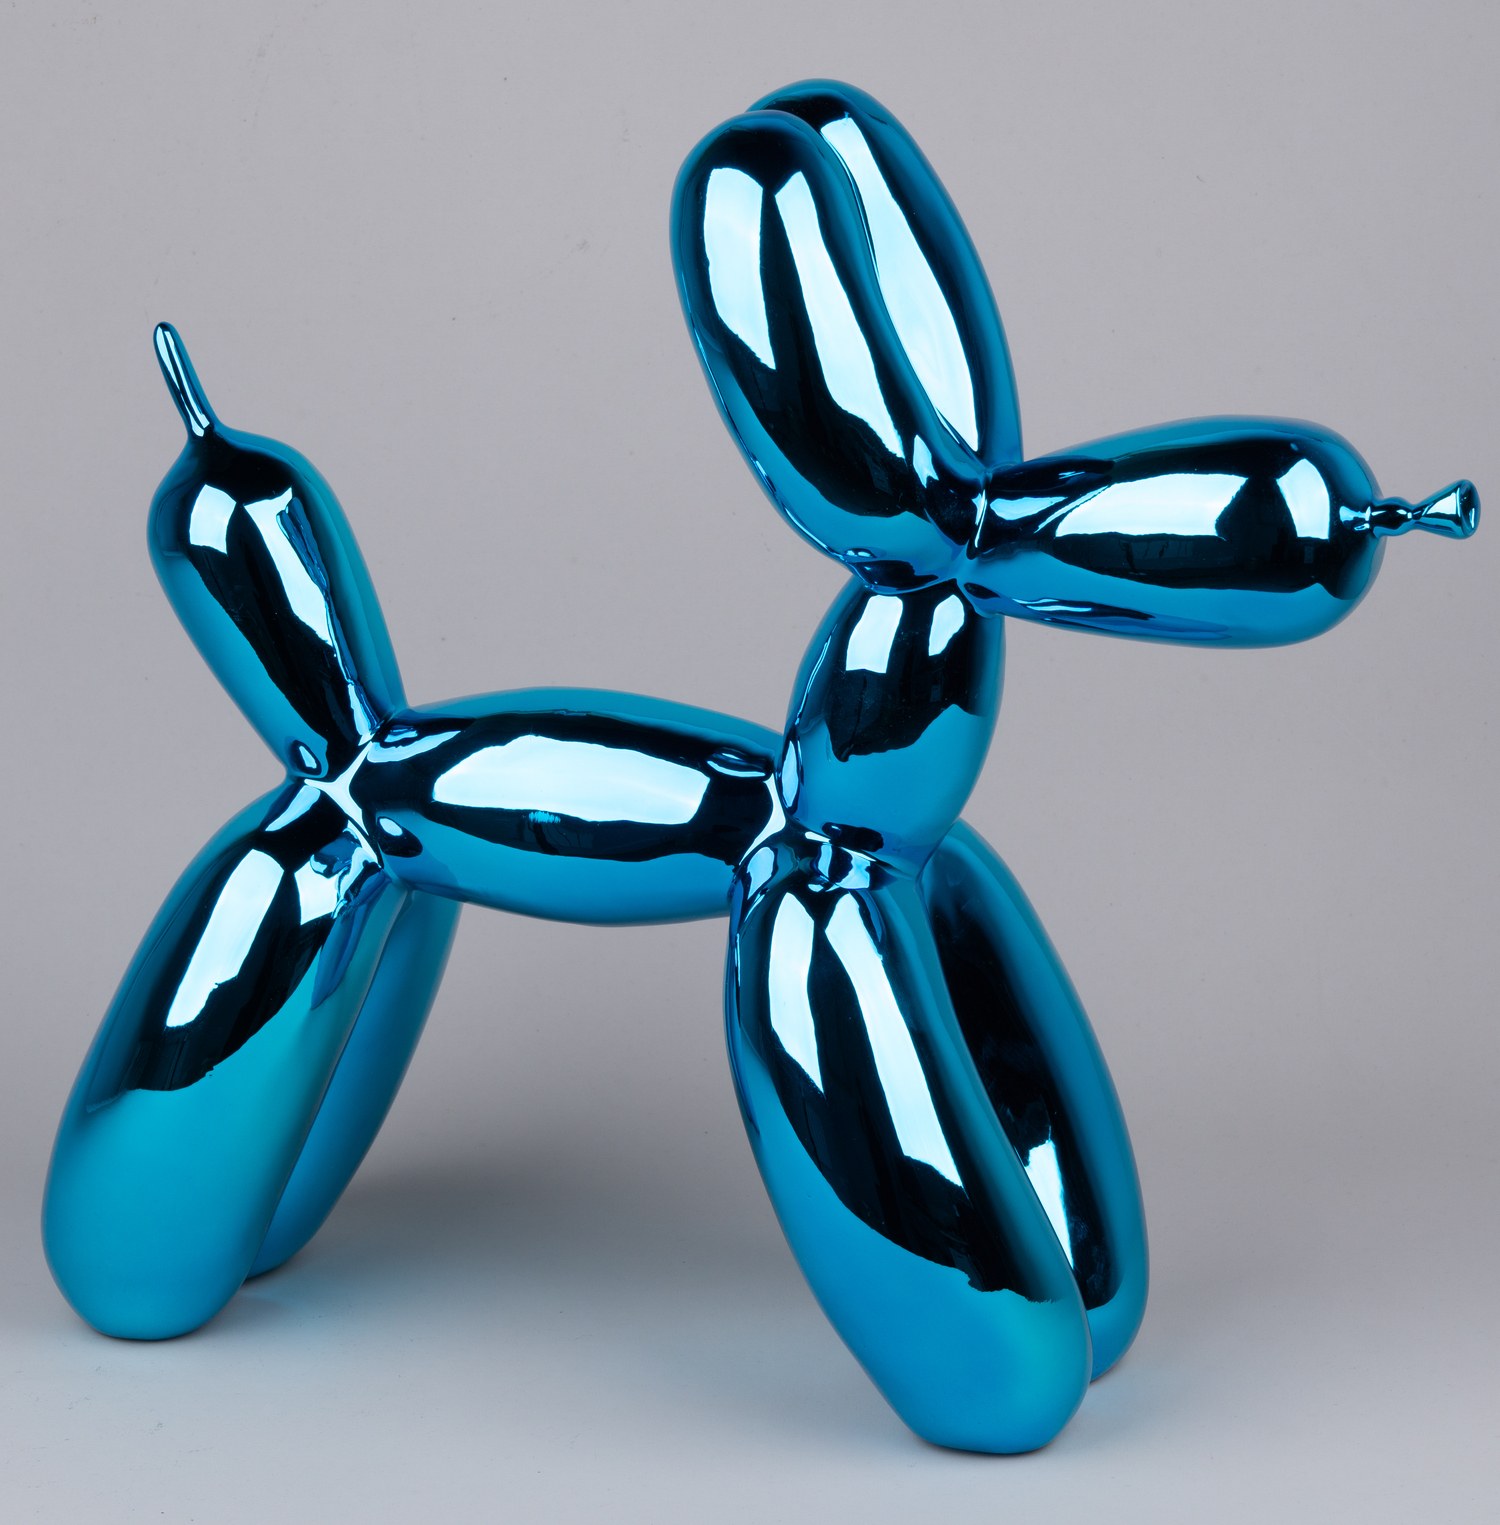 Скульптура «Собака из воздушного шара синего цвета».<br>США, скульптор Джефф Кунс, серия «Celebration», 1994-2000 годы.